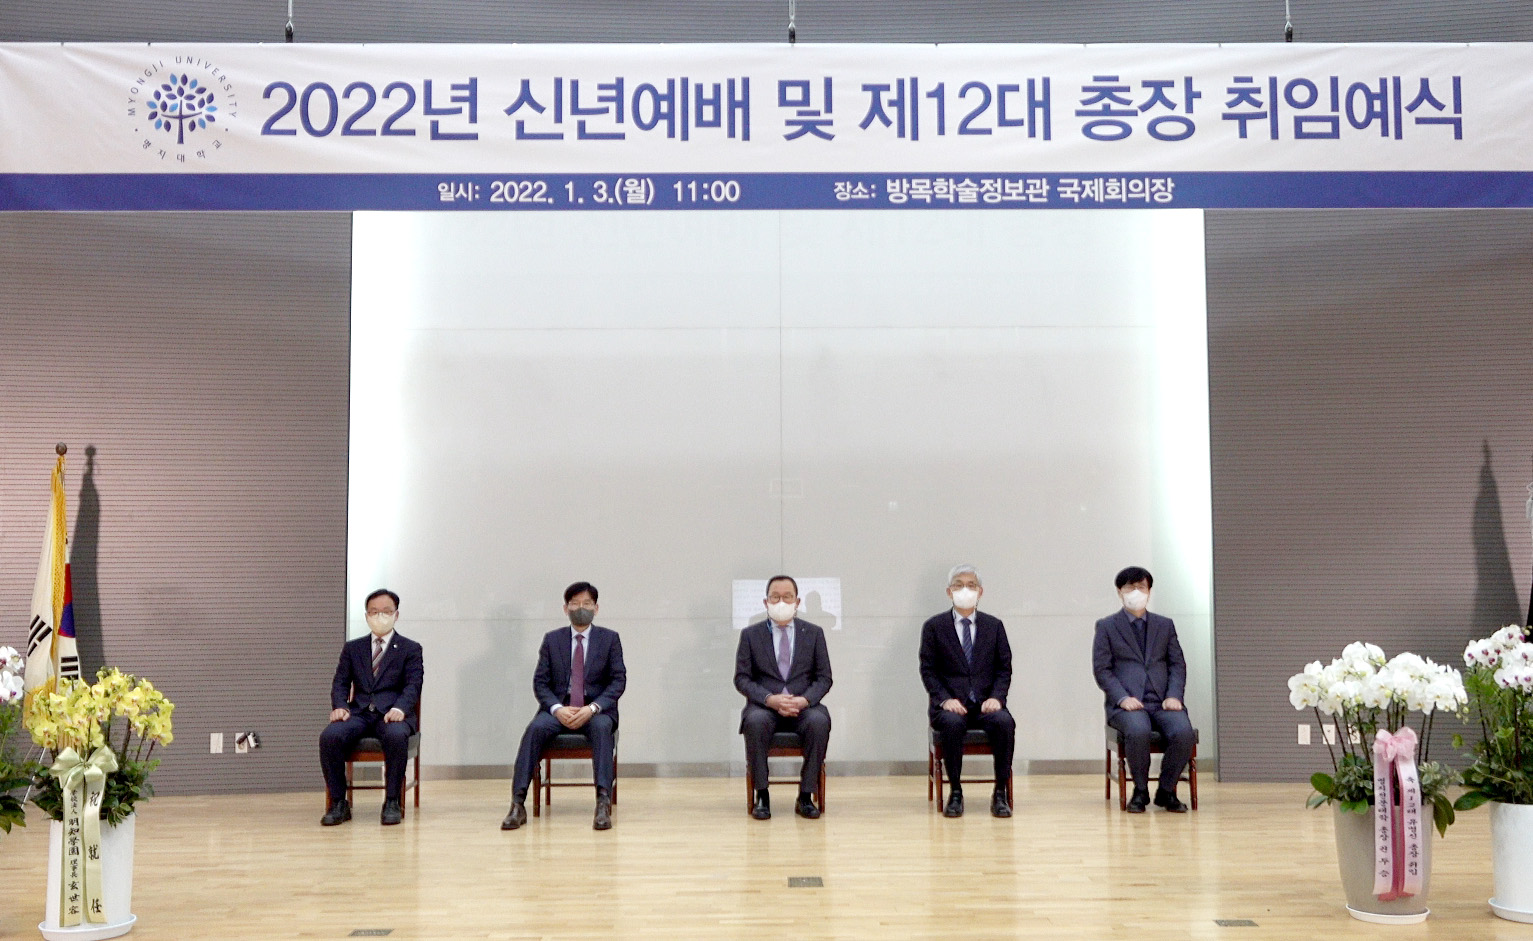 ‘2022년 신년예배 및 제12대 총장 취임예식’ 열려 대표이미지